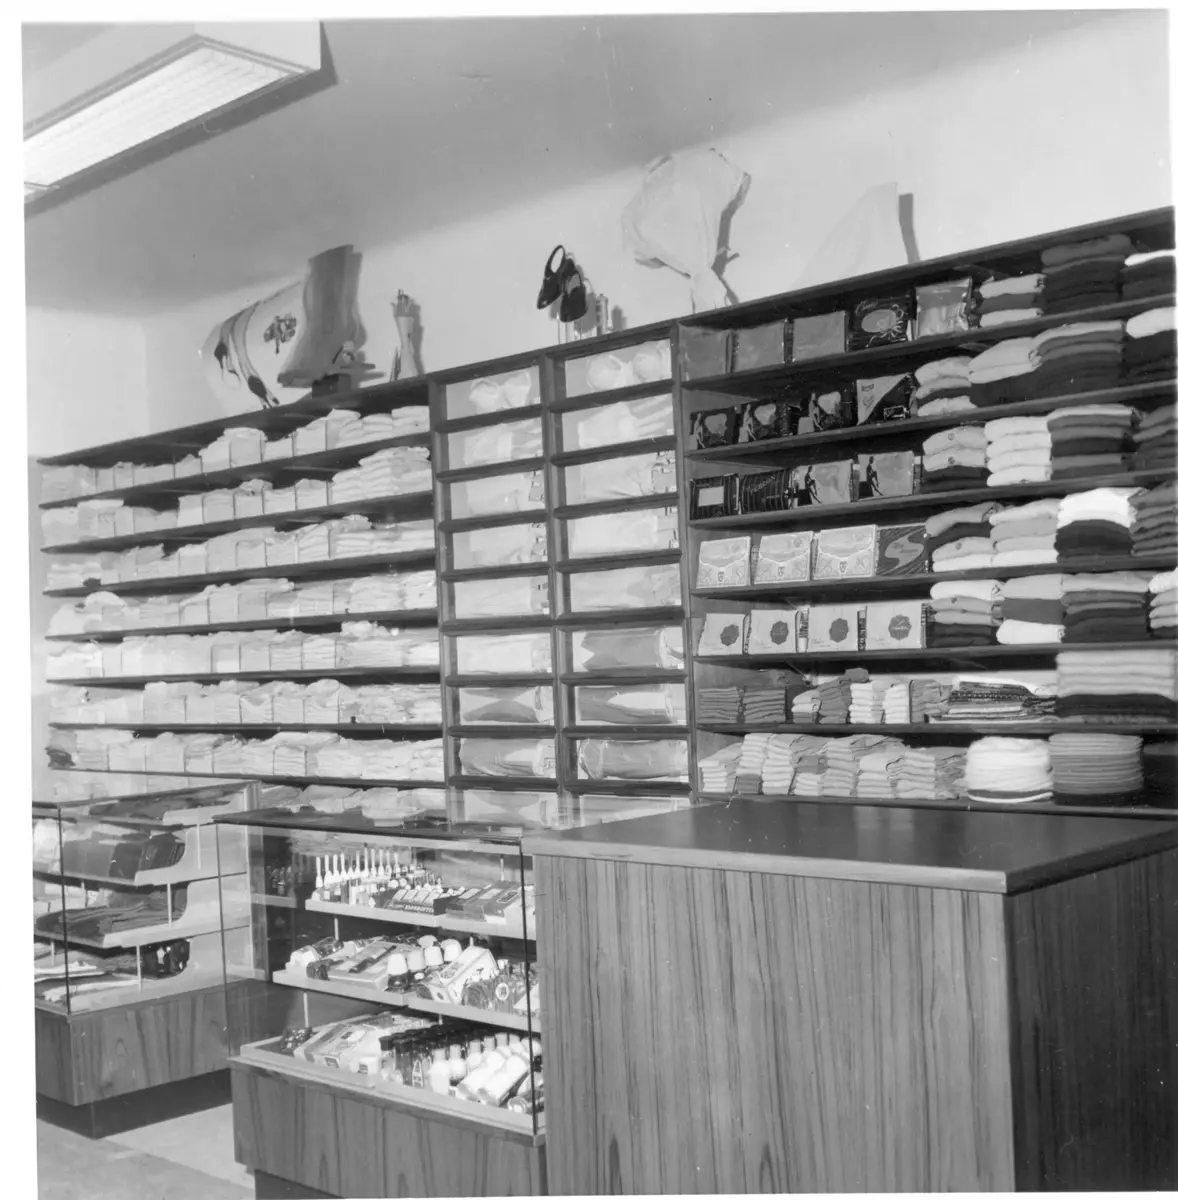 "Vinsy boy - alla grabbars skjorta". Butiken i fastigheten Nyboda erbjöd manufakturvaror och under 1960-talet även byggnadsvaror. 

Konsum övergav Nyboda under mitten av 1960-talet och den privata ICA-handlaren Göran Särnsjö öppnade där en byggvarubutik.